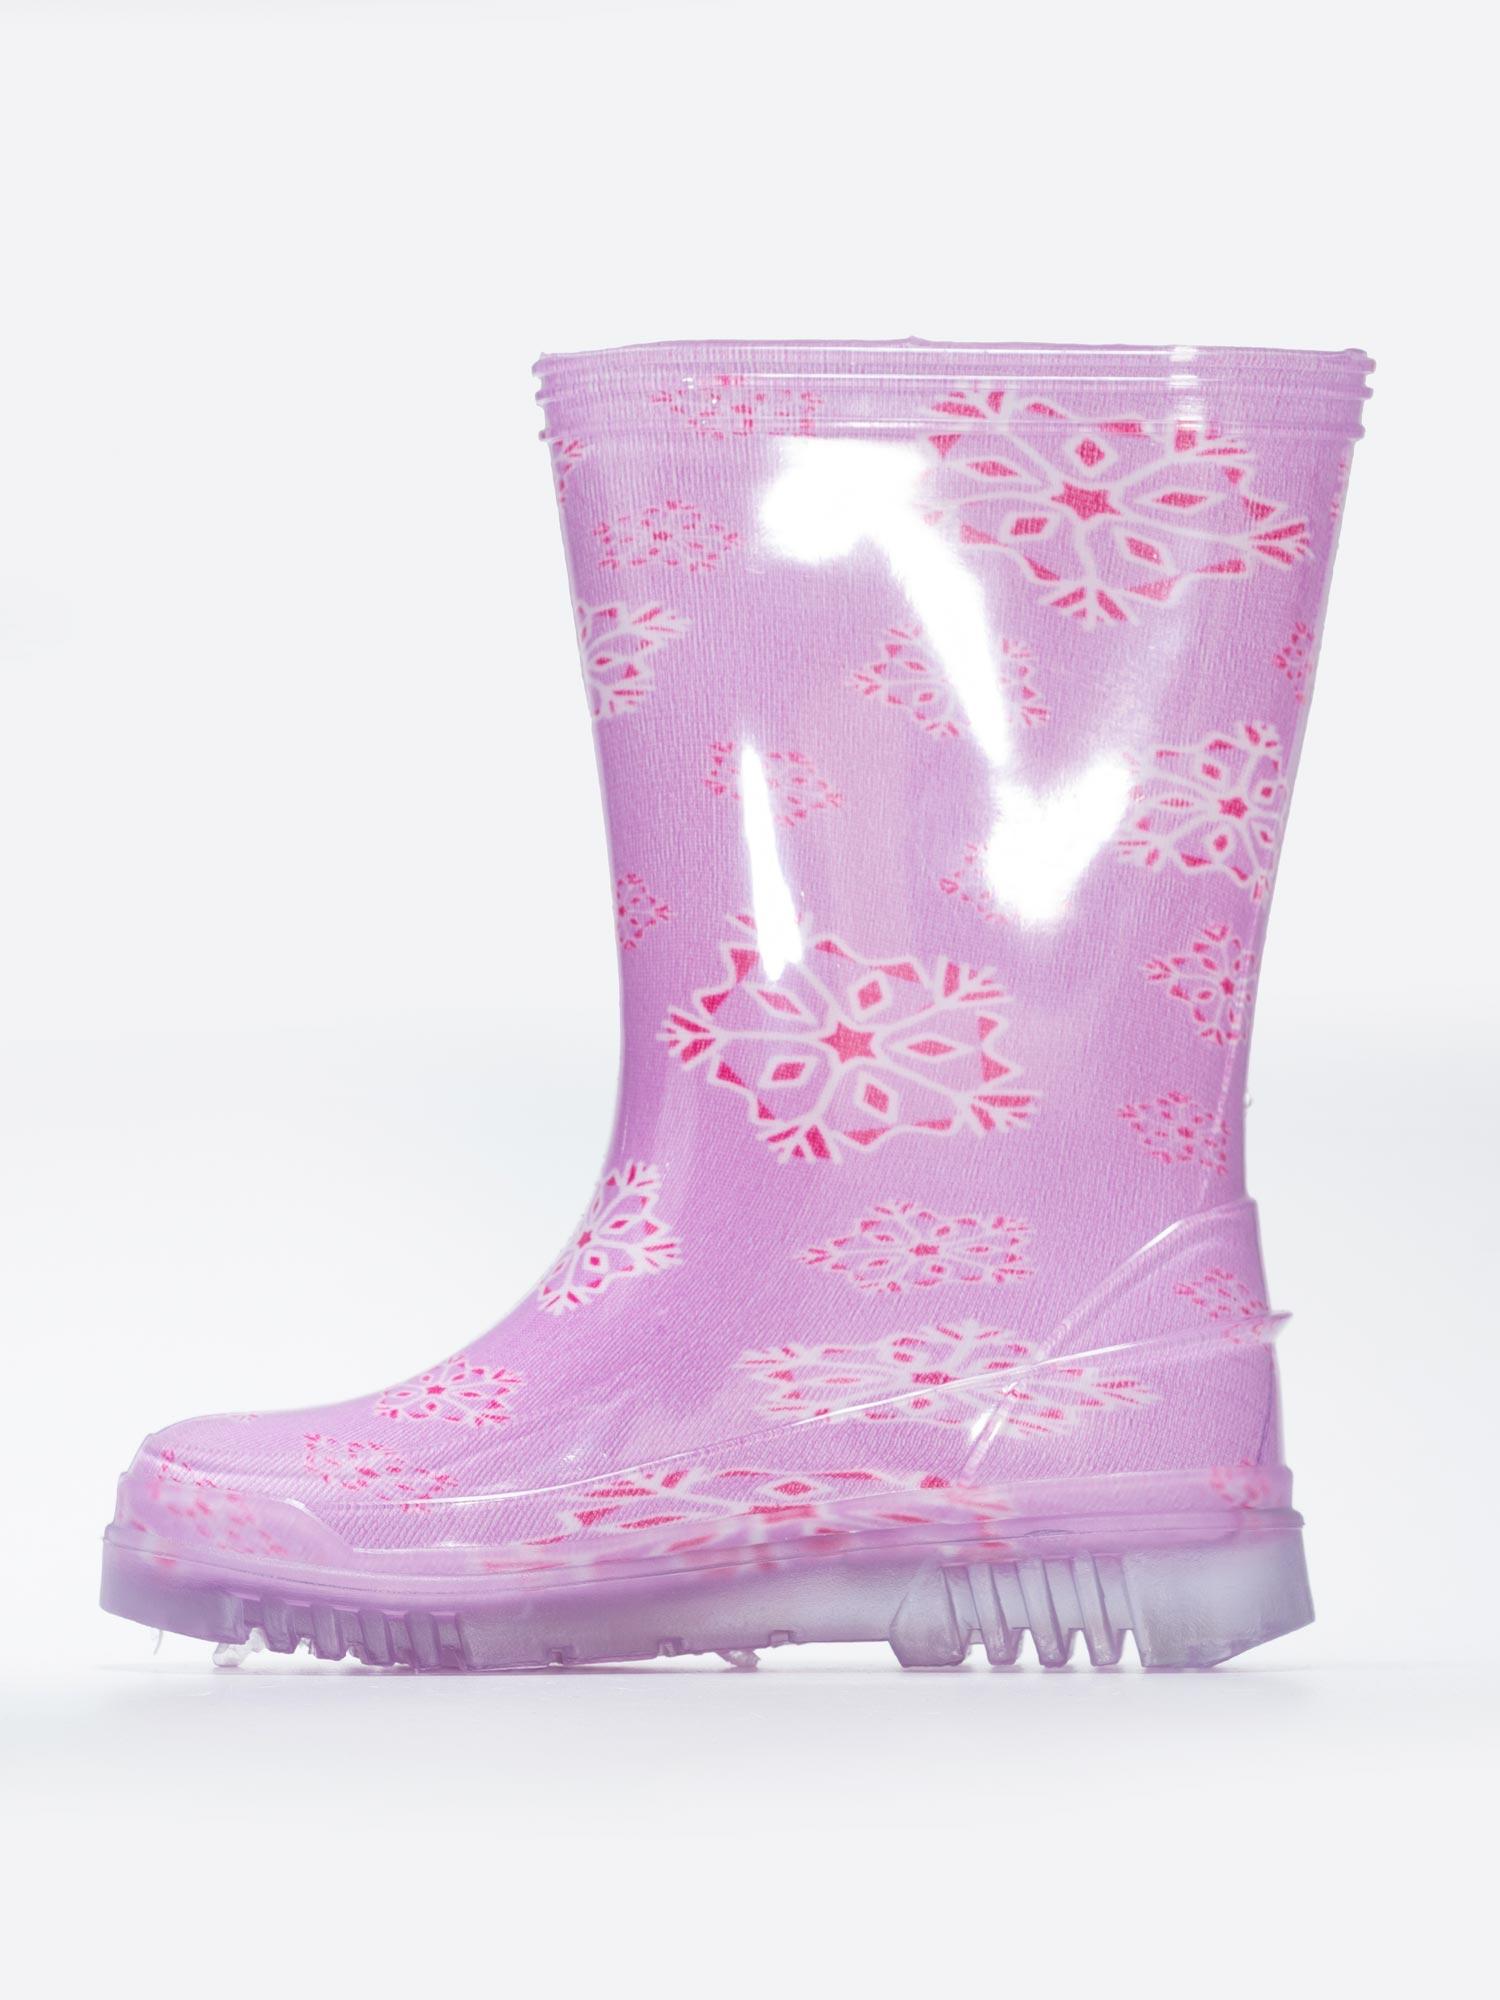 Selected image for BRILLE Gumene čizme za devojčice Ruffas II roze